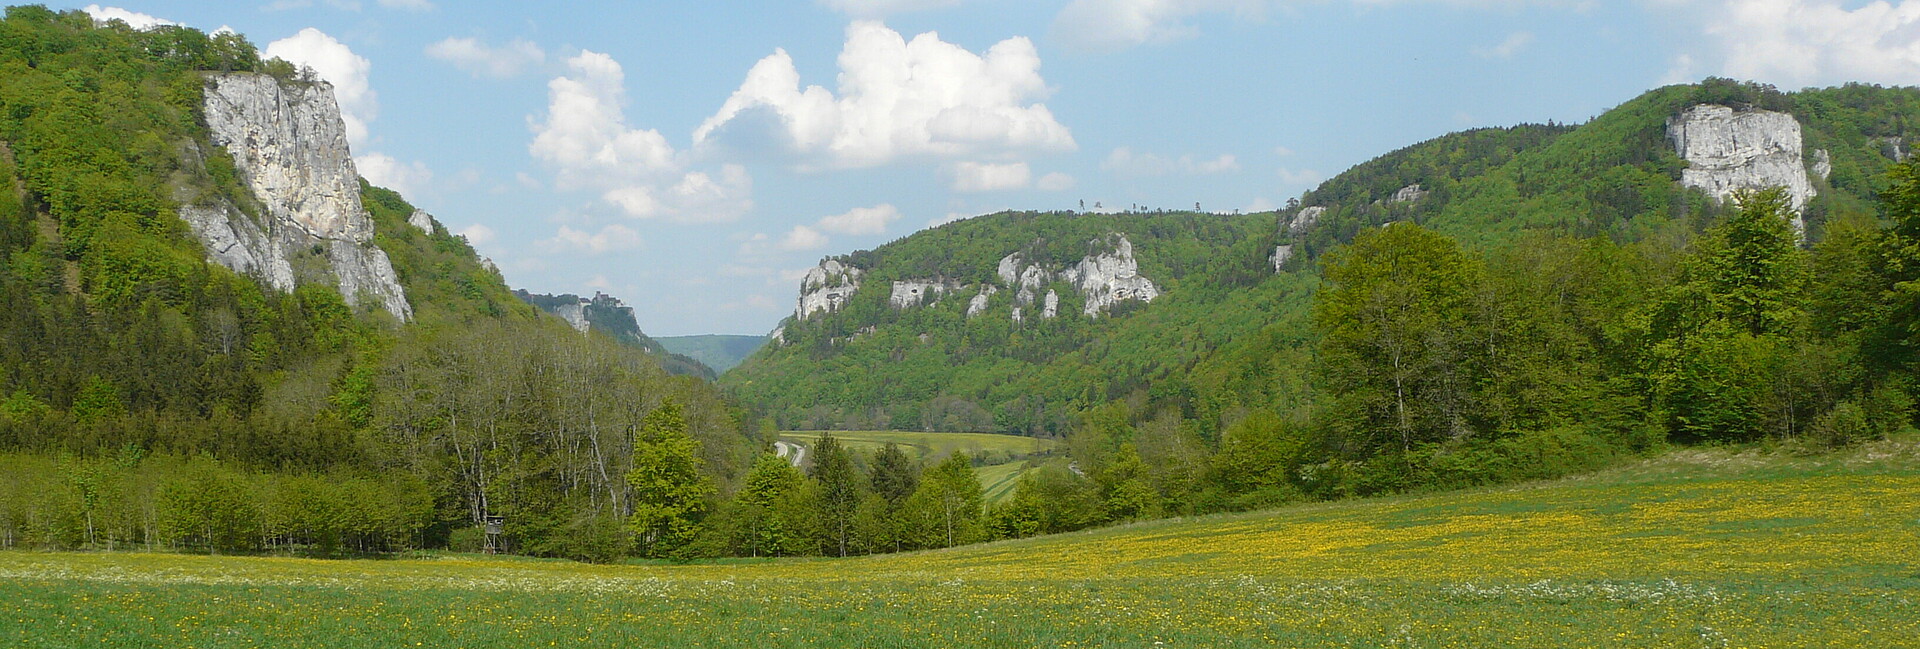 Blick auf Wiesen und bewaldete Felshänge im Oberen Donautal